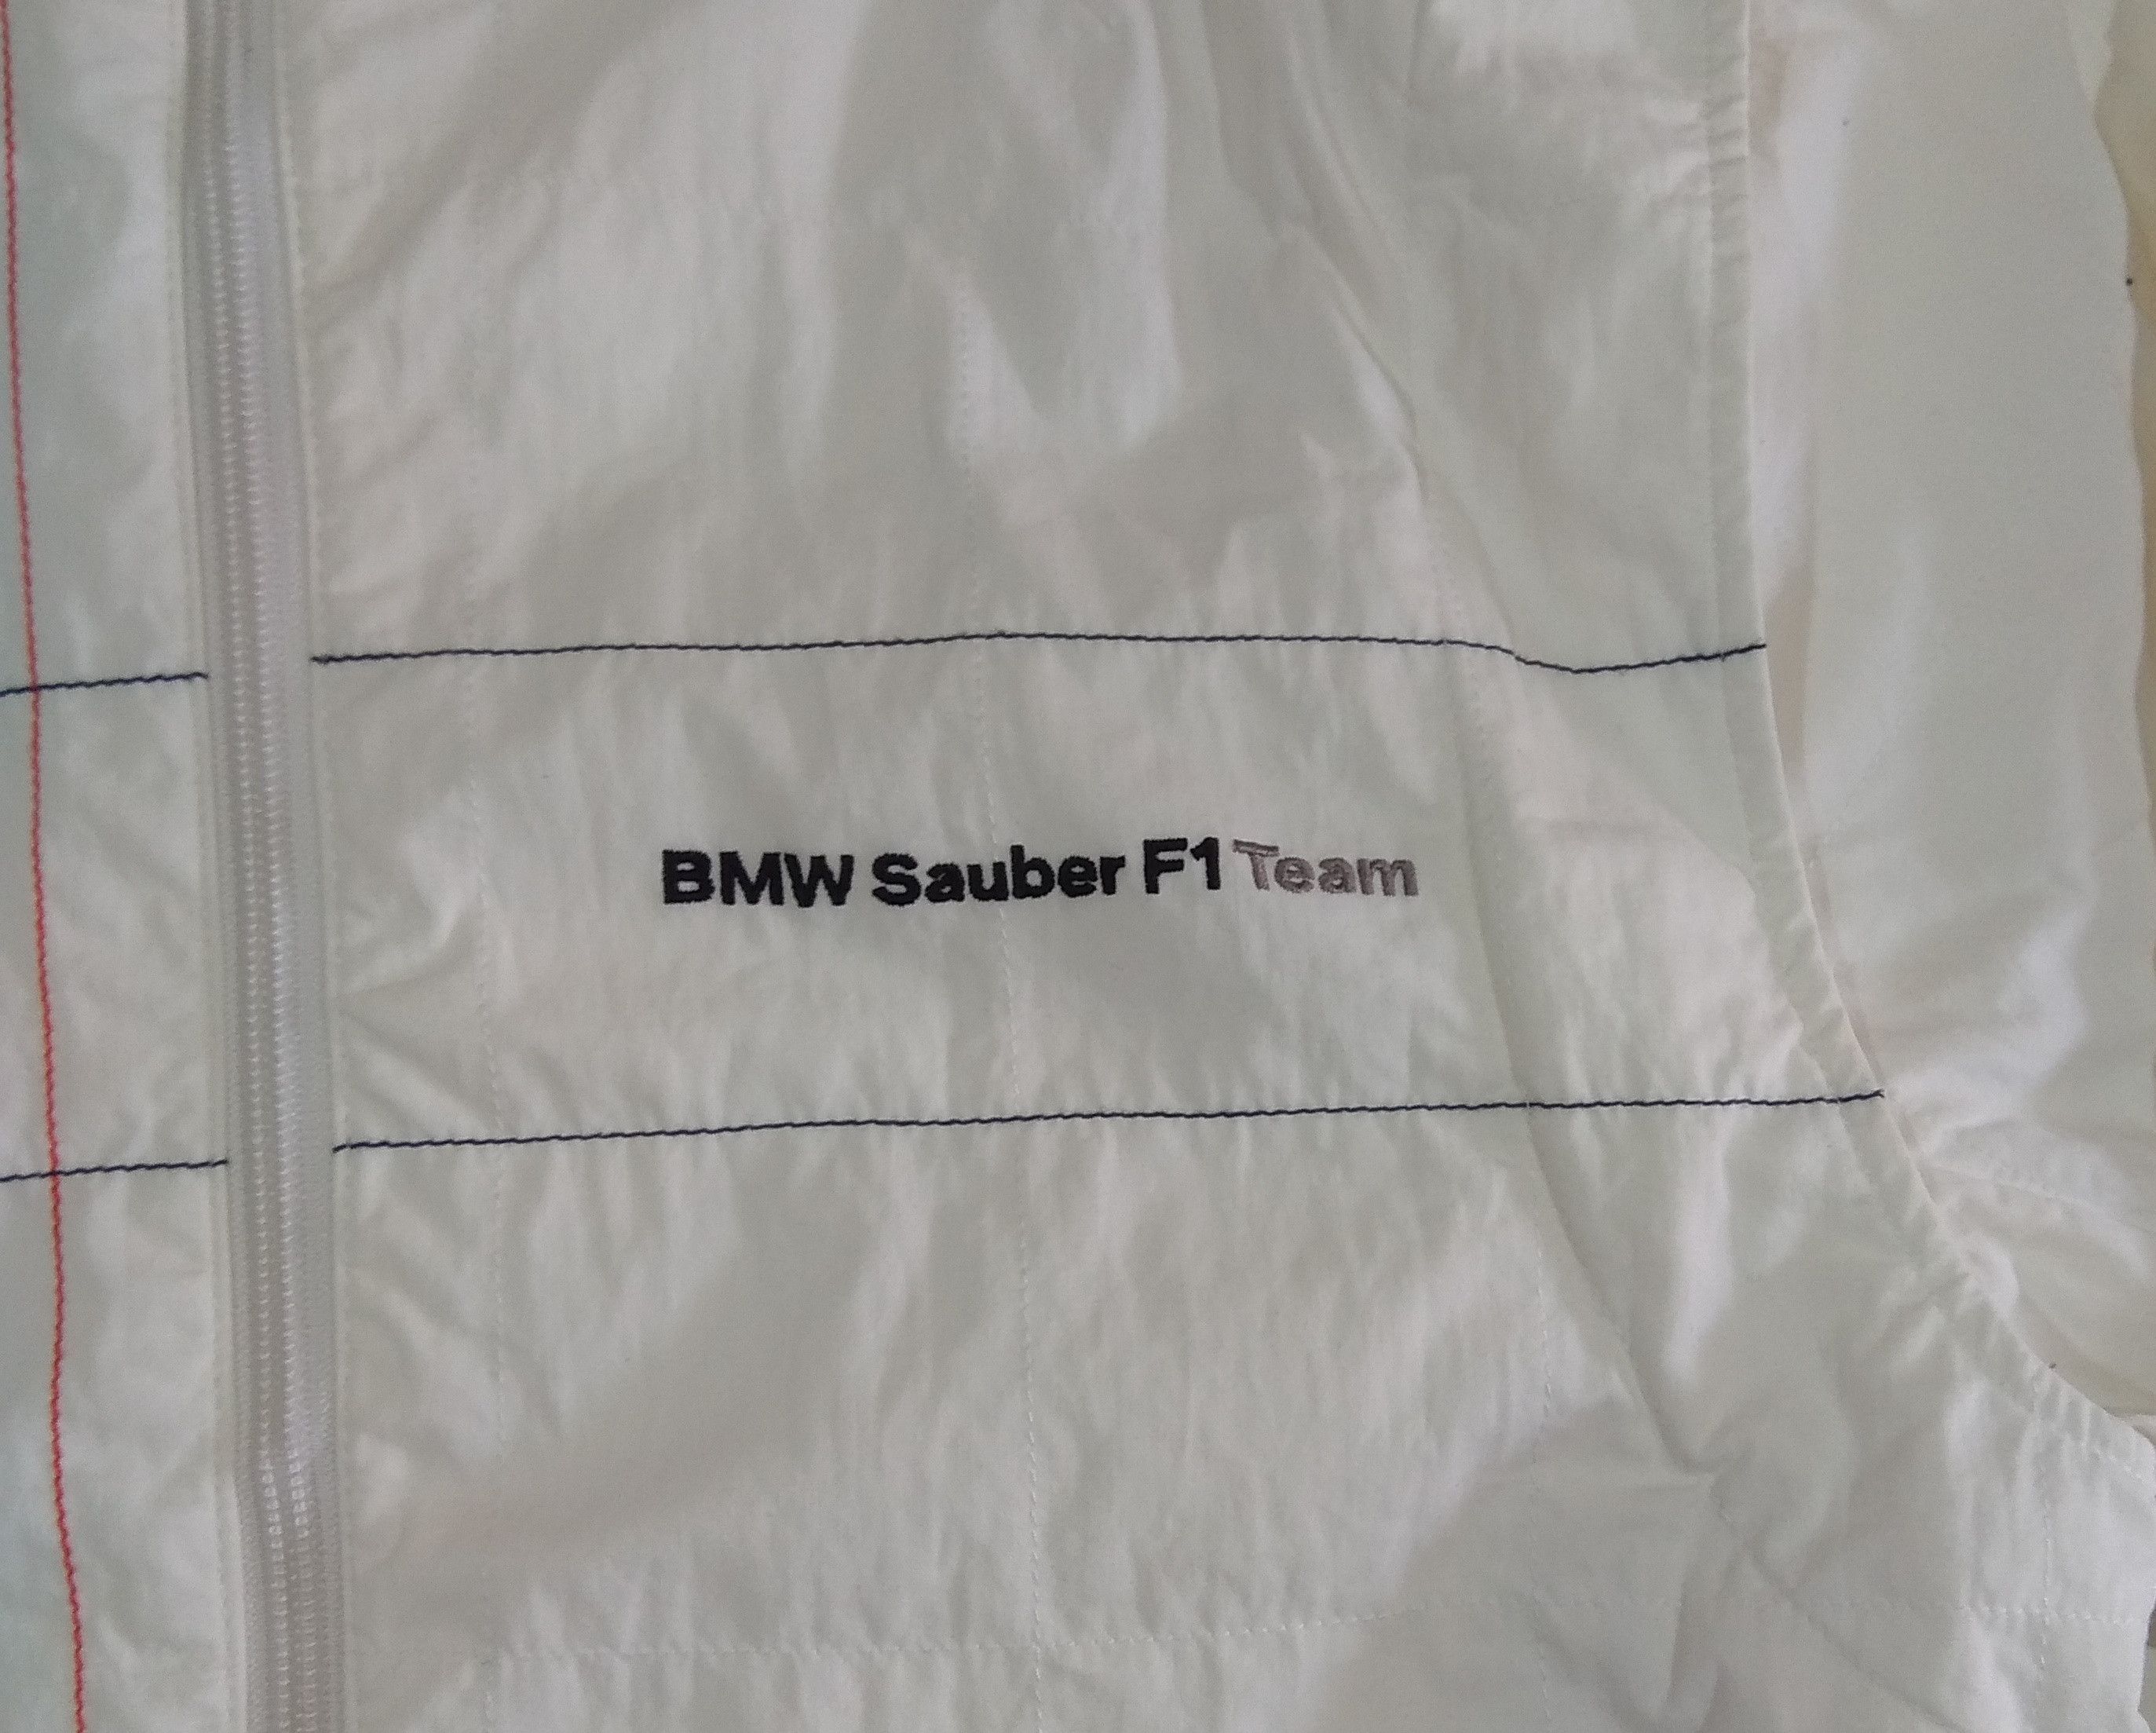 Puma Rare!! BMW Sauber F1 Team Officials Jacket Size US M / EU 48-50 / 2 - 2 Preview